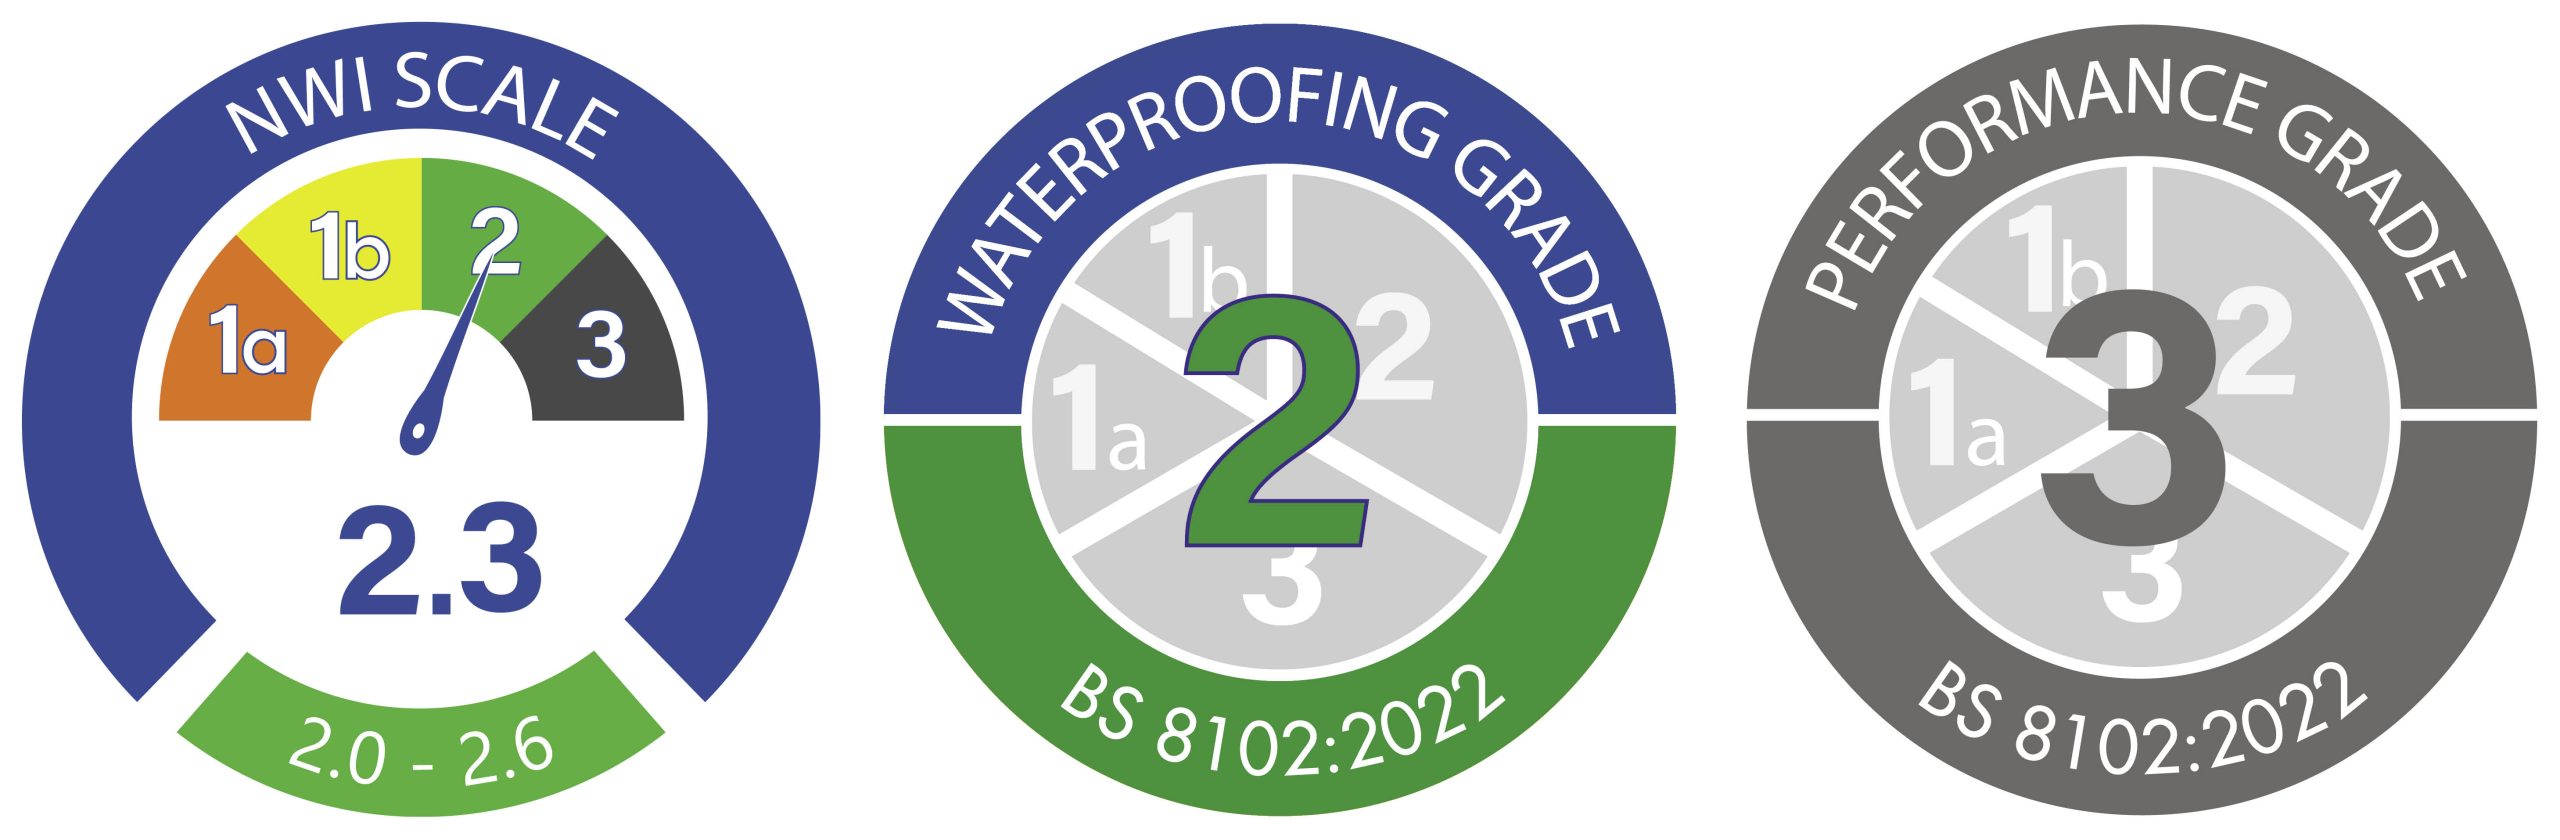 Combined Newton Waterproofing Index Logos for Scoring Waterproofing Designs